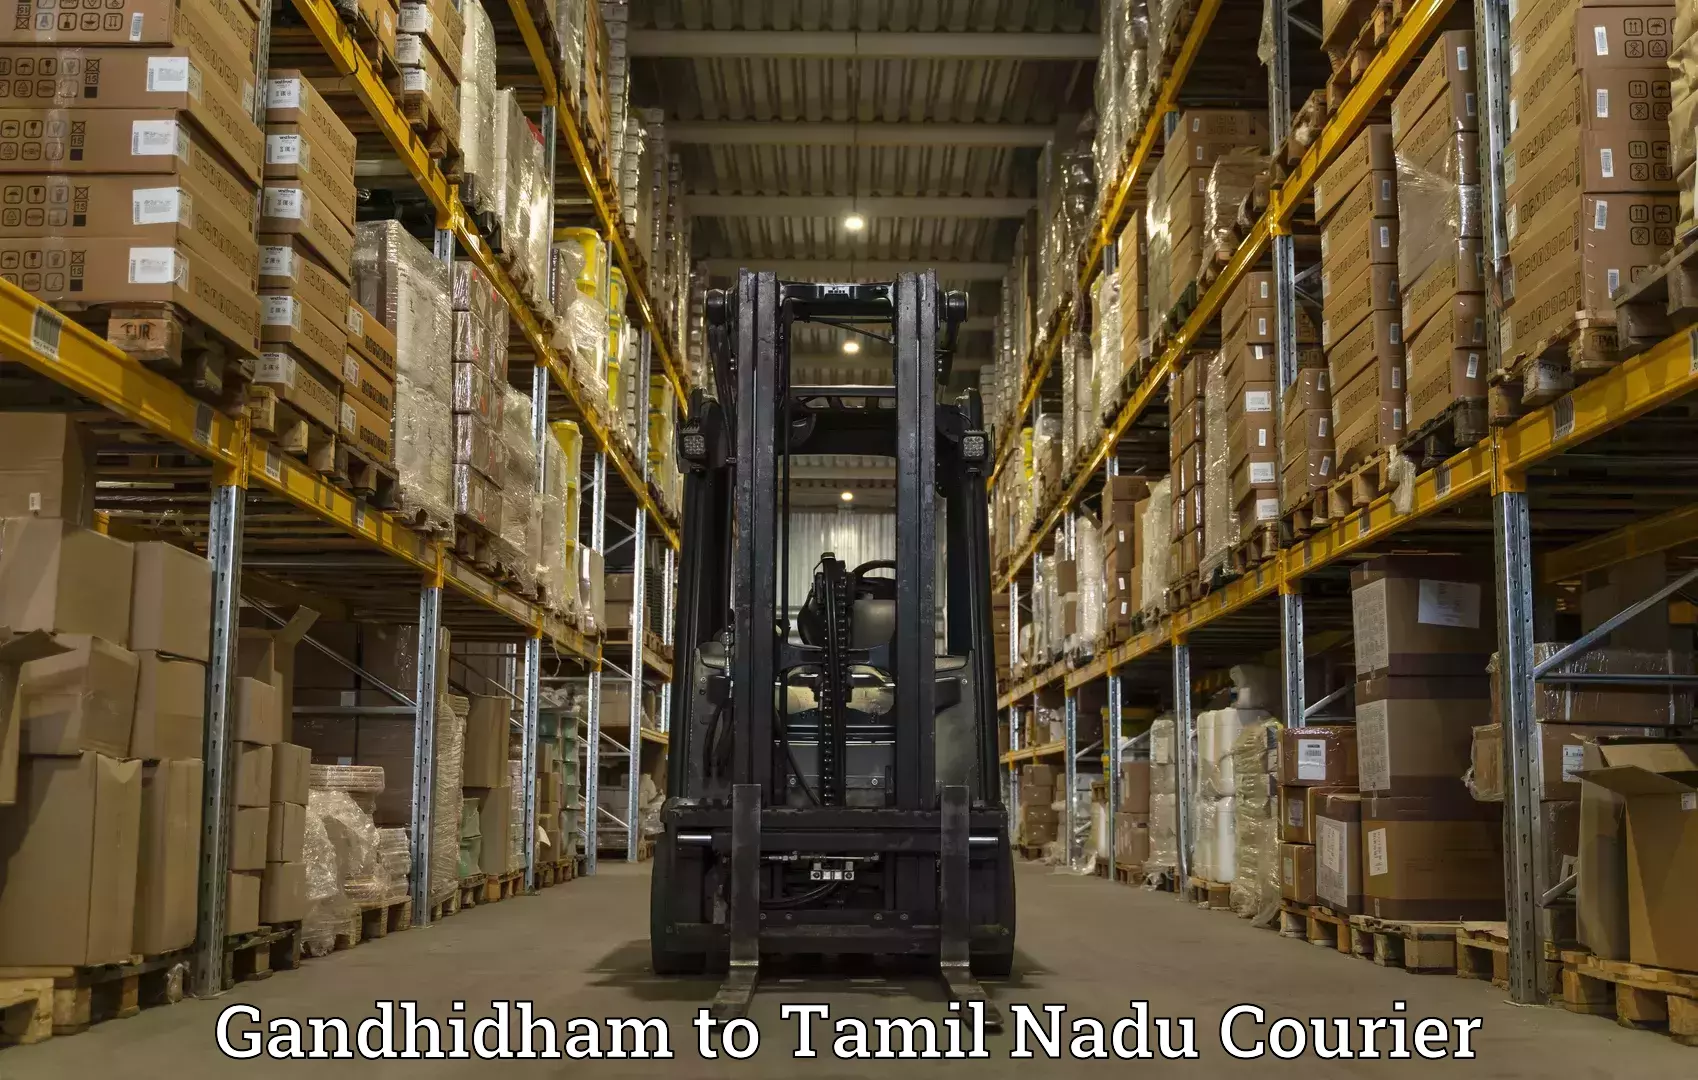 Premium courier solutions Gandhidham to Eral